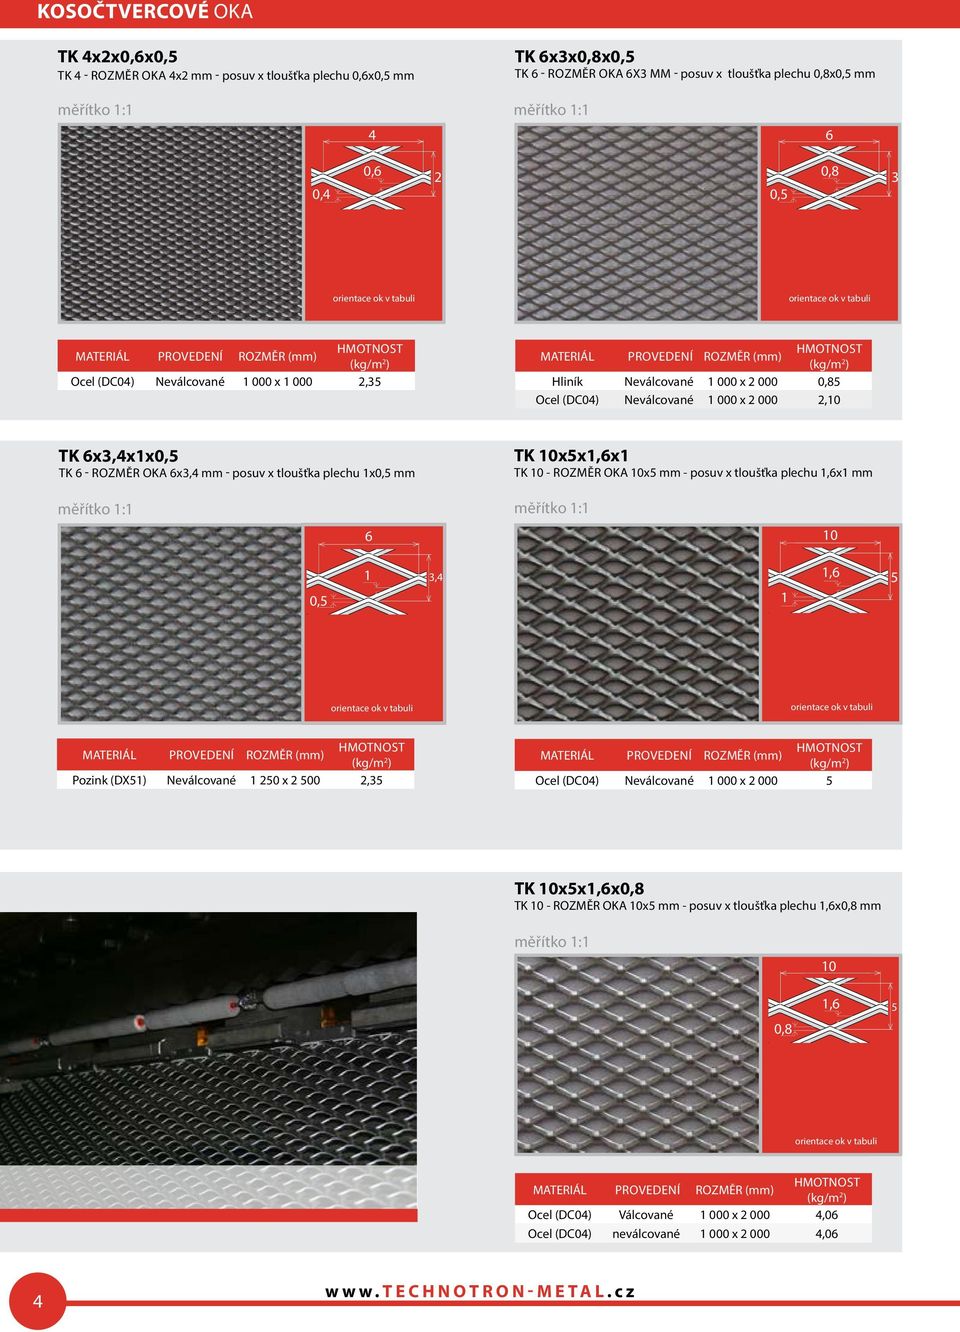 plechu 1x0,5 mm TK 10x5x1,6x1 TK 10 - ROZMěR OKA 10x5 mm - posuv x tloušťka plechu 1,6x1 mm 6 10 0,5 1,4 1 1,6 5 Pozink (DX51) Neválcované 1 50 x 500,5 Ocel (DC04) Neválcované 1 000